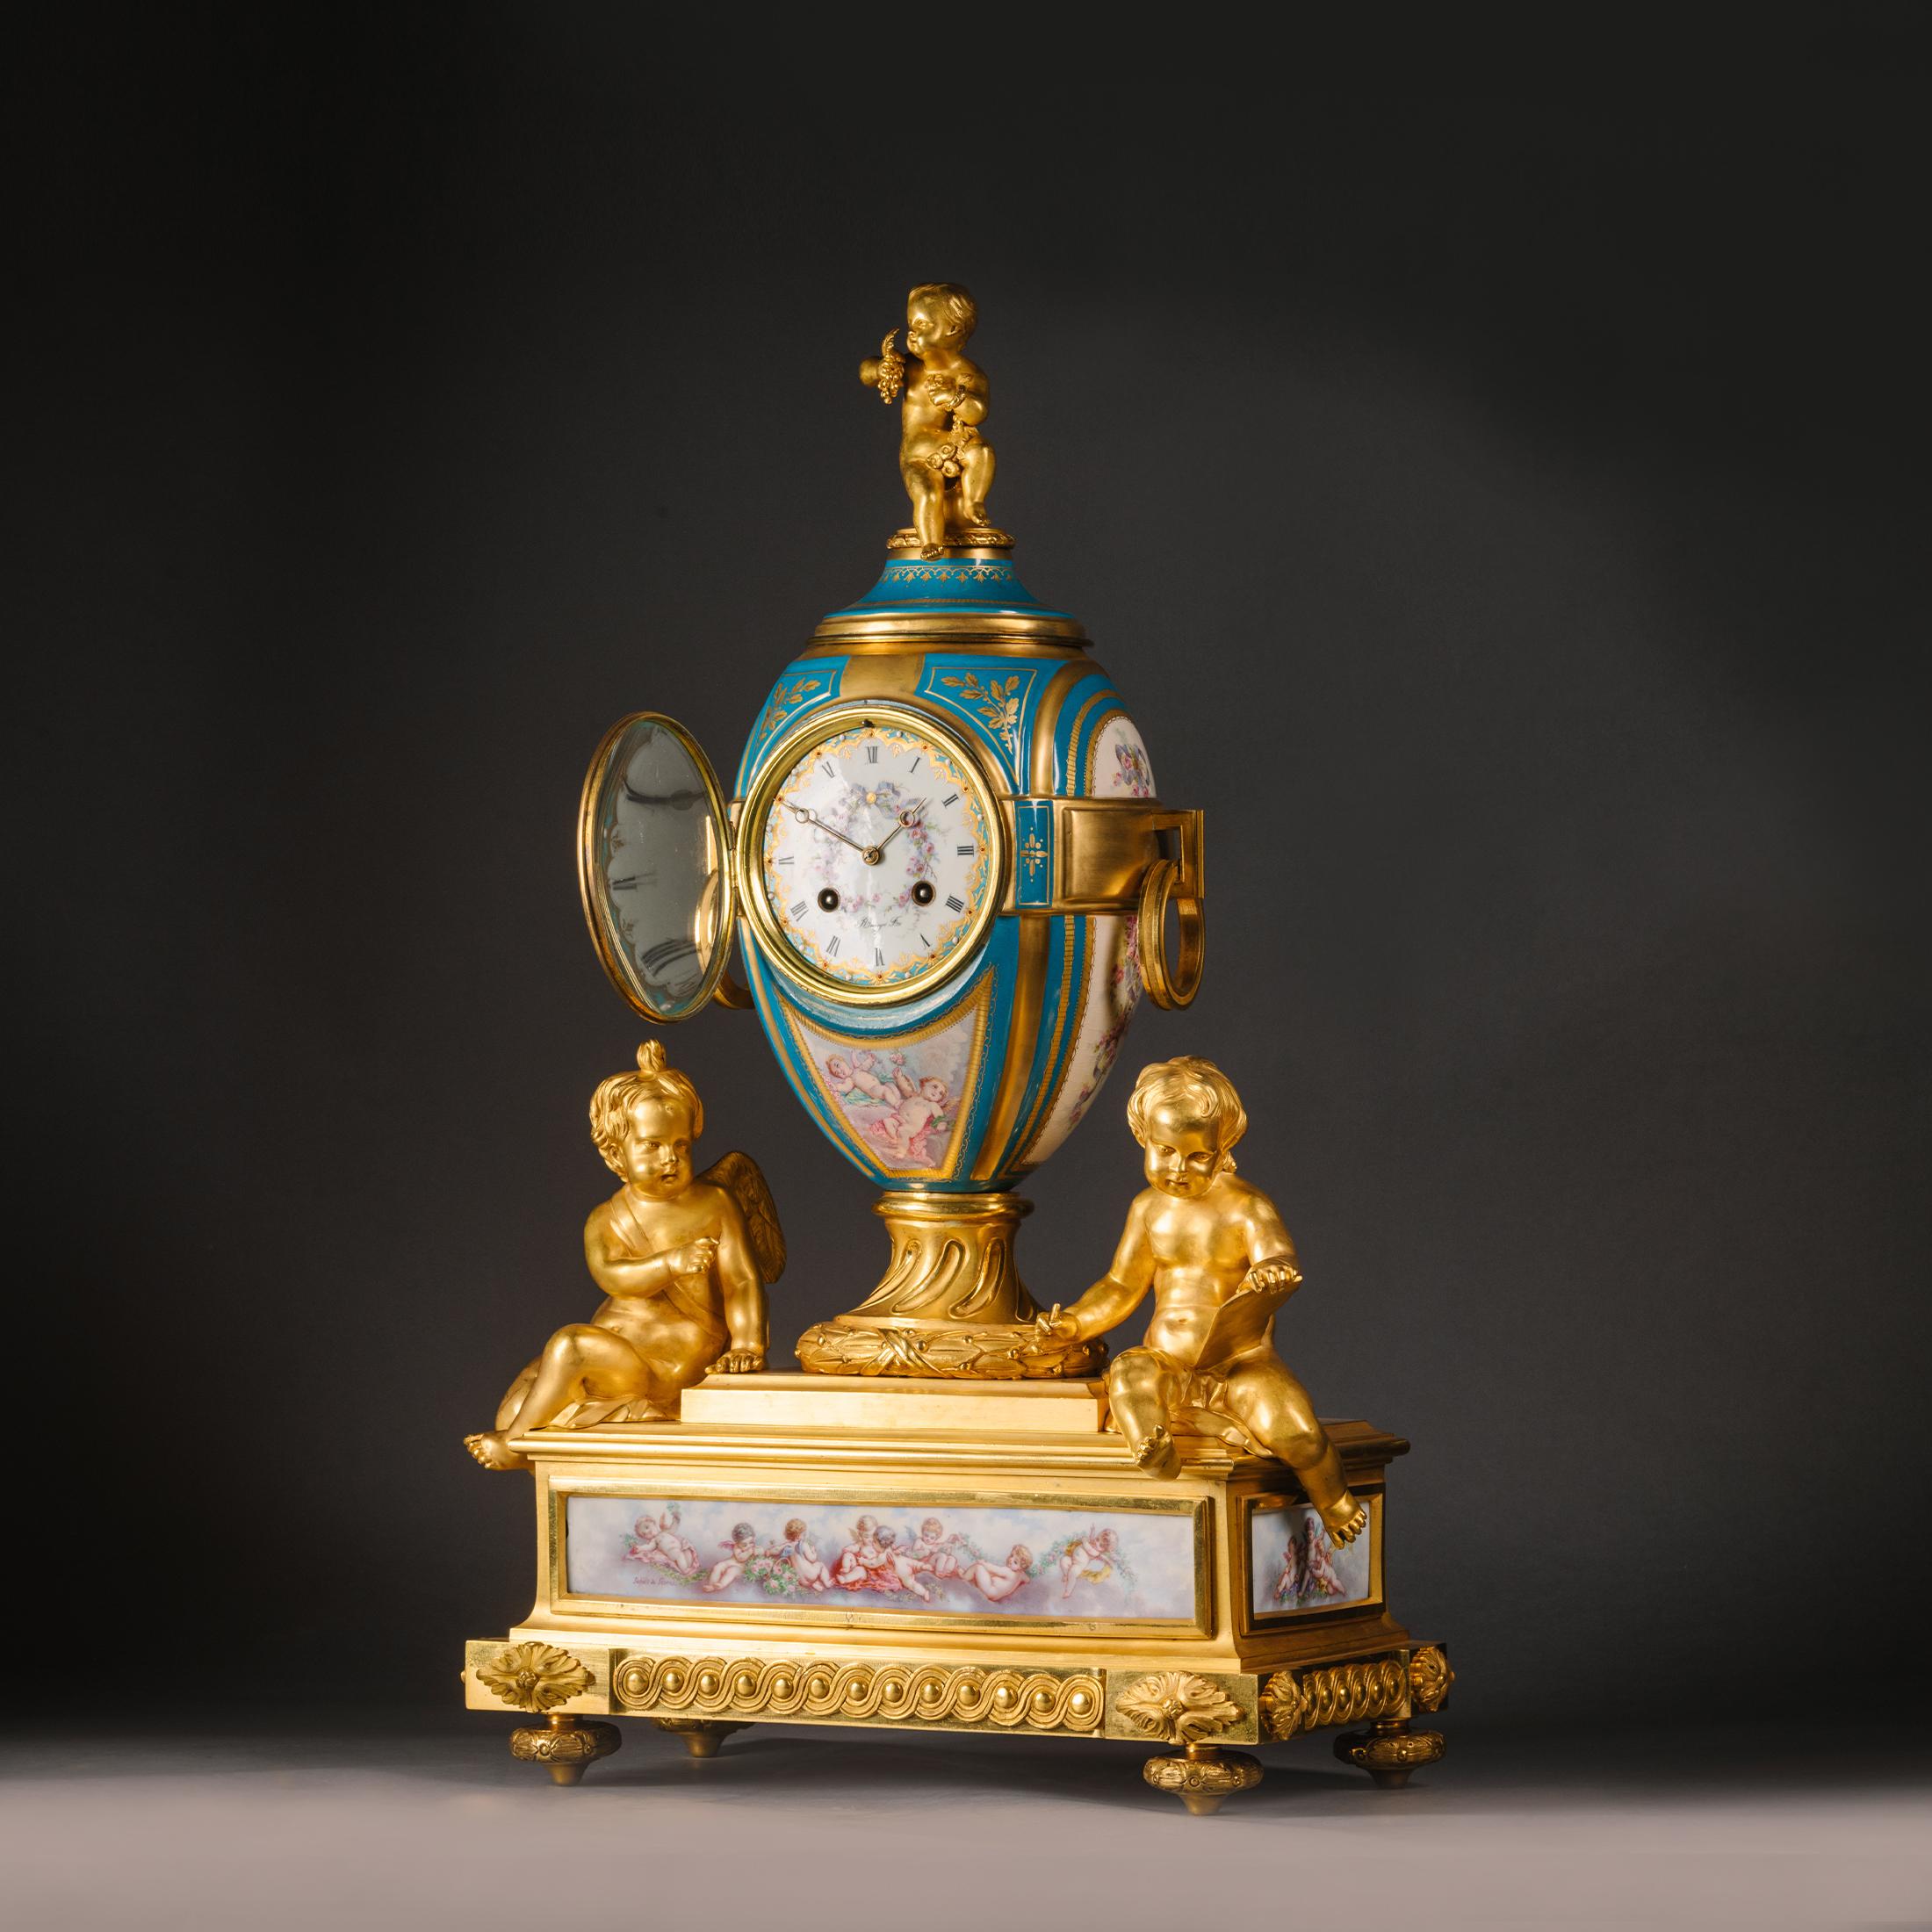 Pendule de cheminée en bronze doré de style Louis XVI et en porcelaine de Sèvres, par Raingo Frères, Paris. Les panneaux de porcelaine sont signés par Léonard Abel Schilt. 

Le mouvement est estampillé 